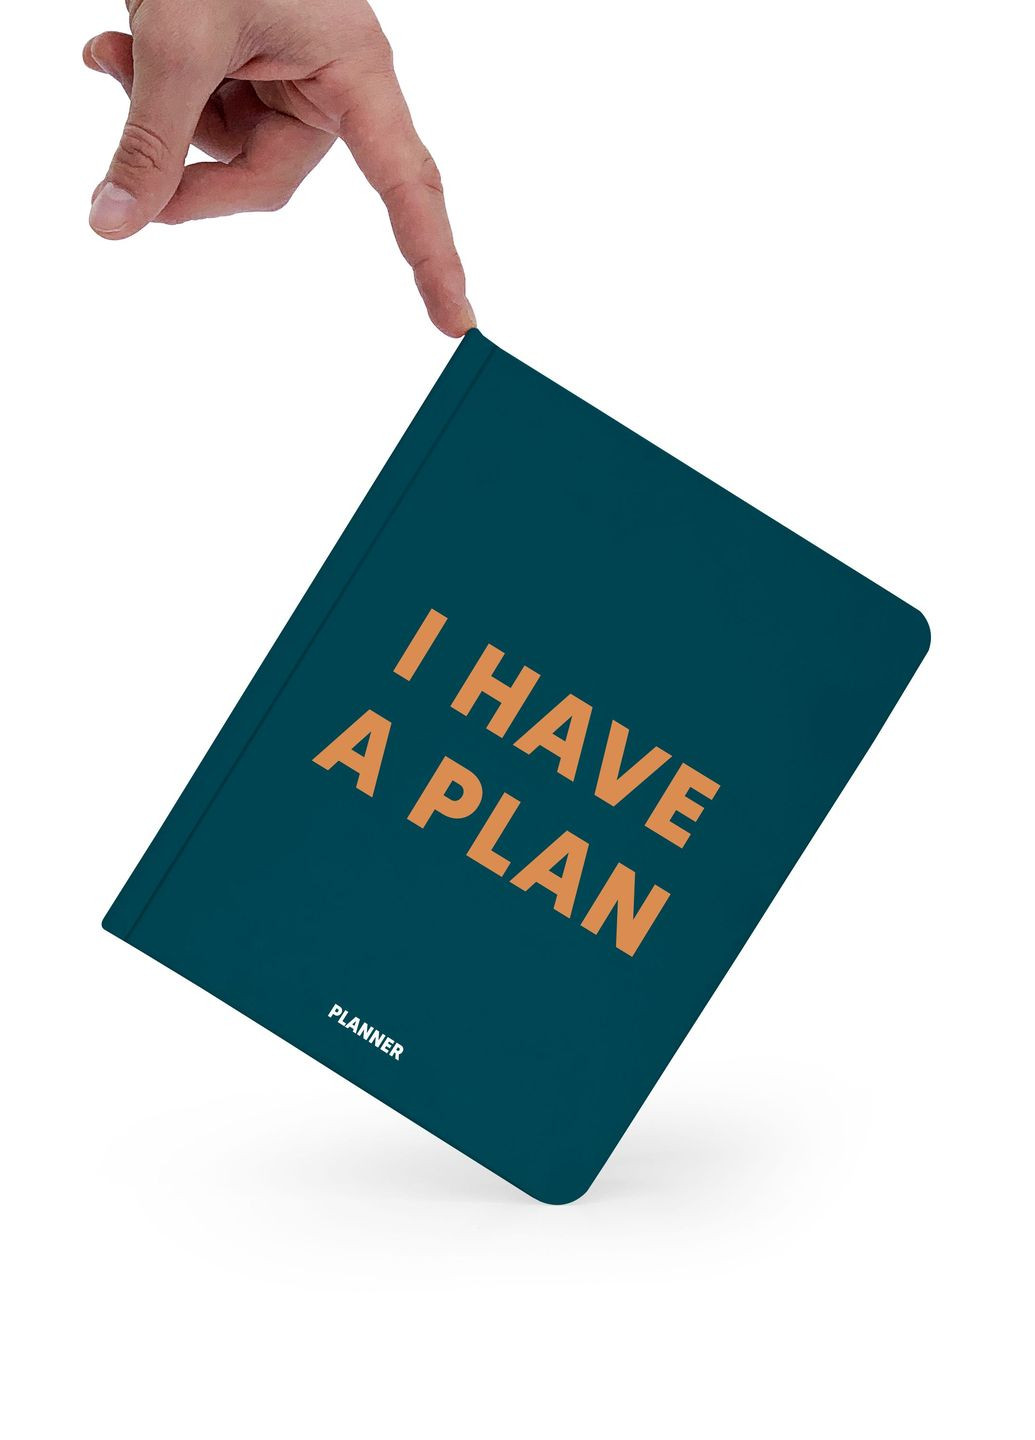 Блокнот для планирования "I HAVE A PLAN" зеленый Orner - (260335891)